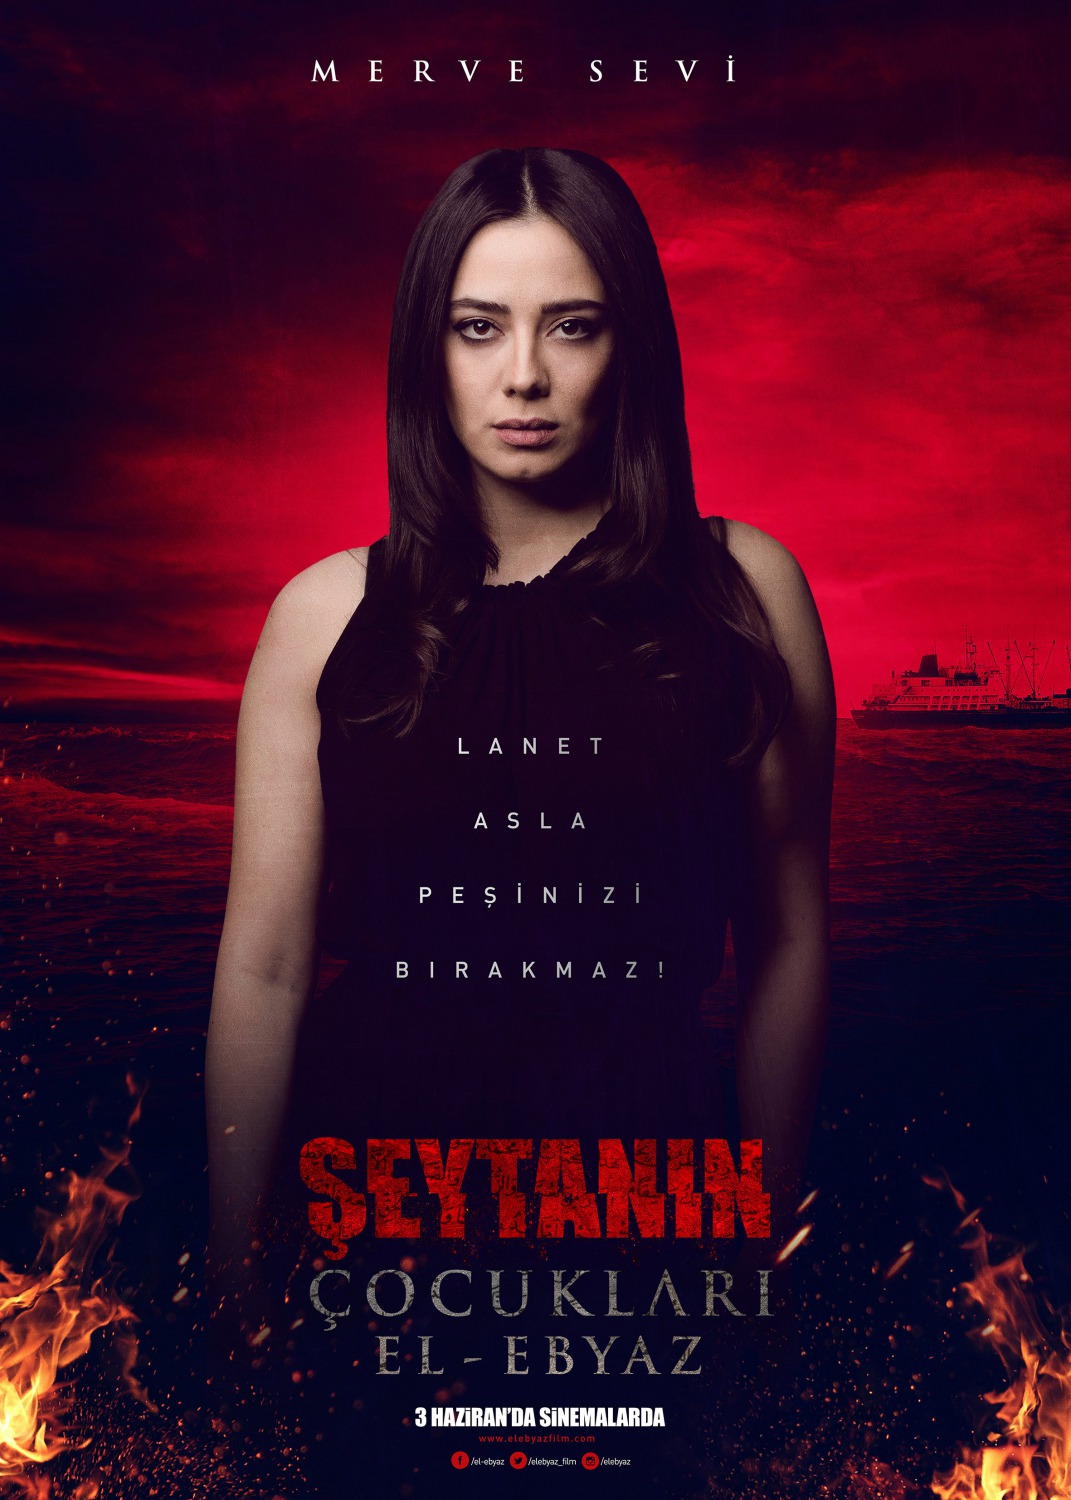 Extra Large Movie Poster Image for Şeytanın Çocukları-El Ebyaz (#4 of 7)